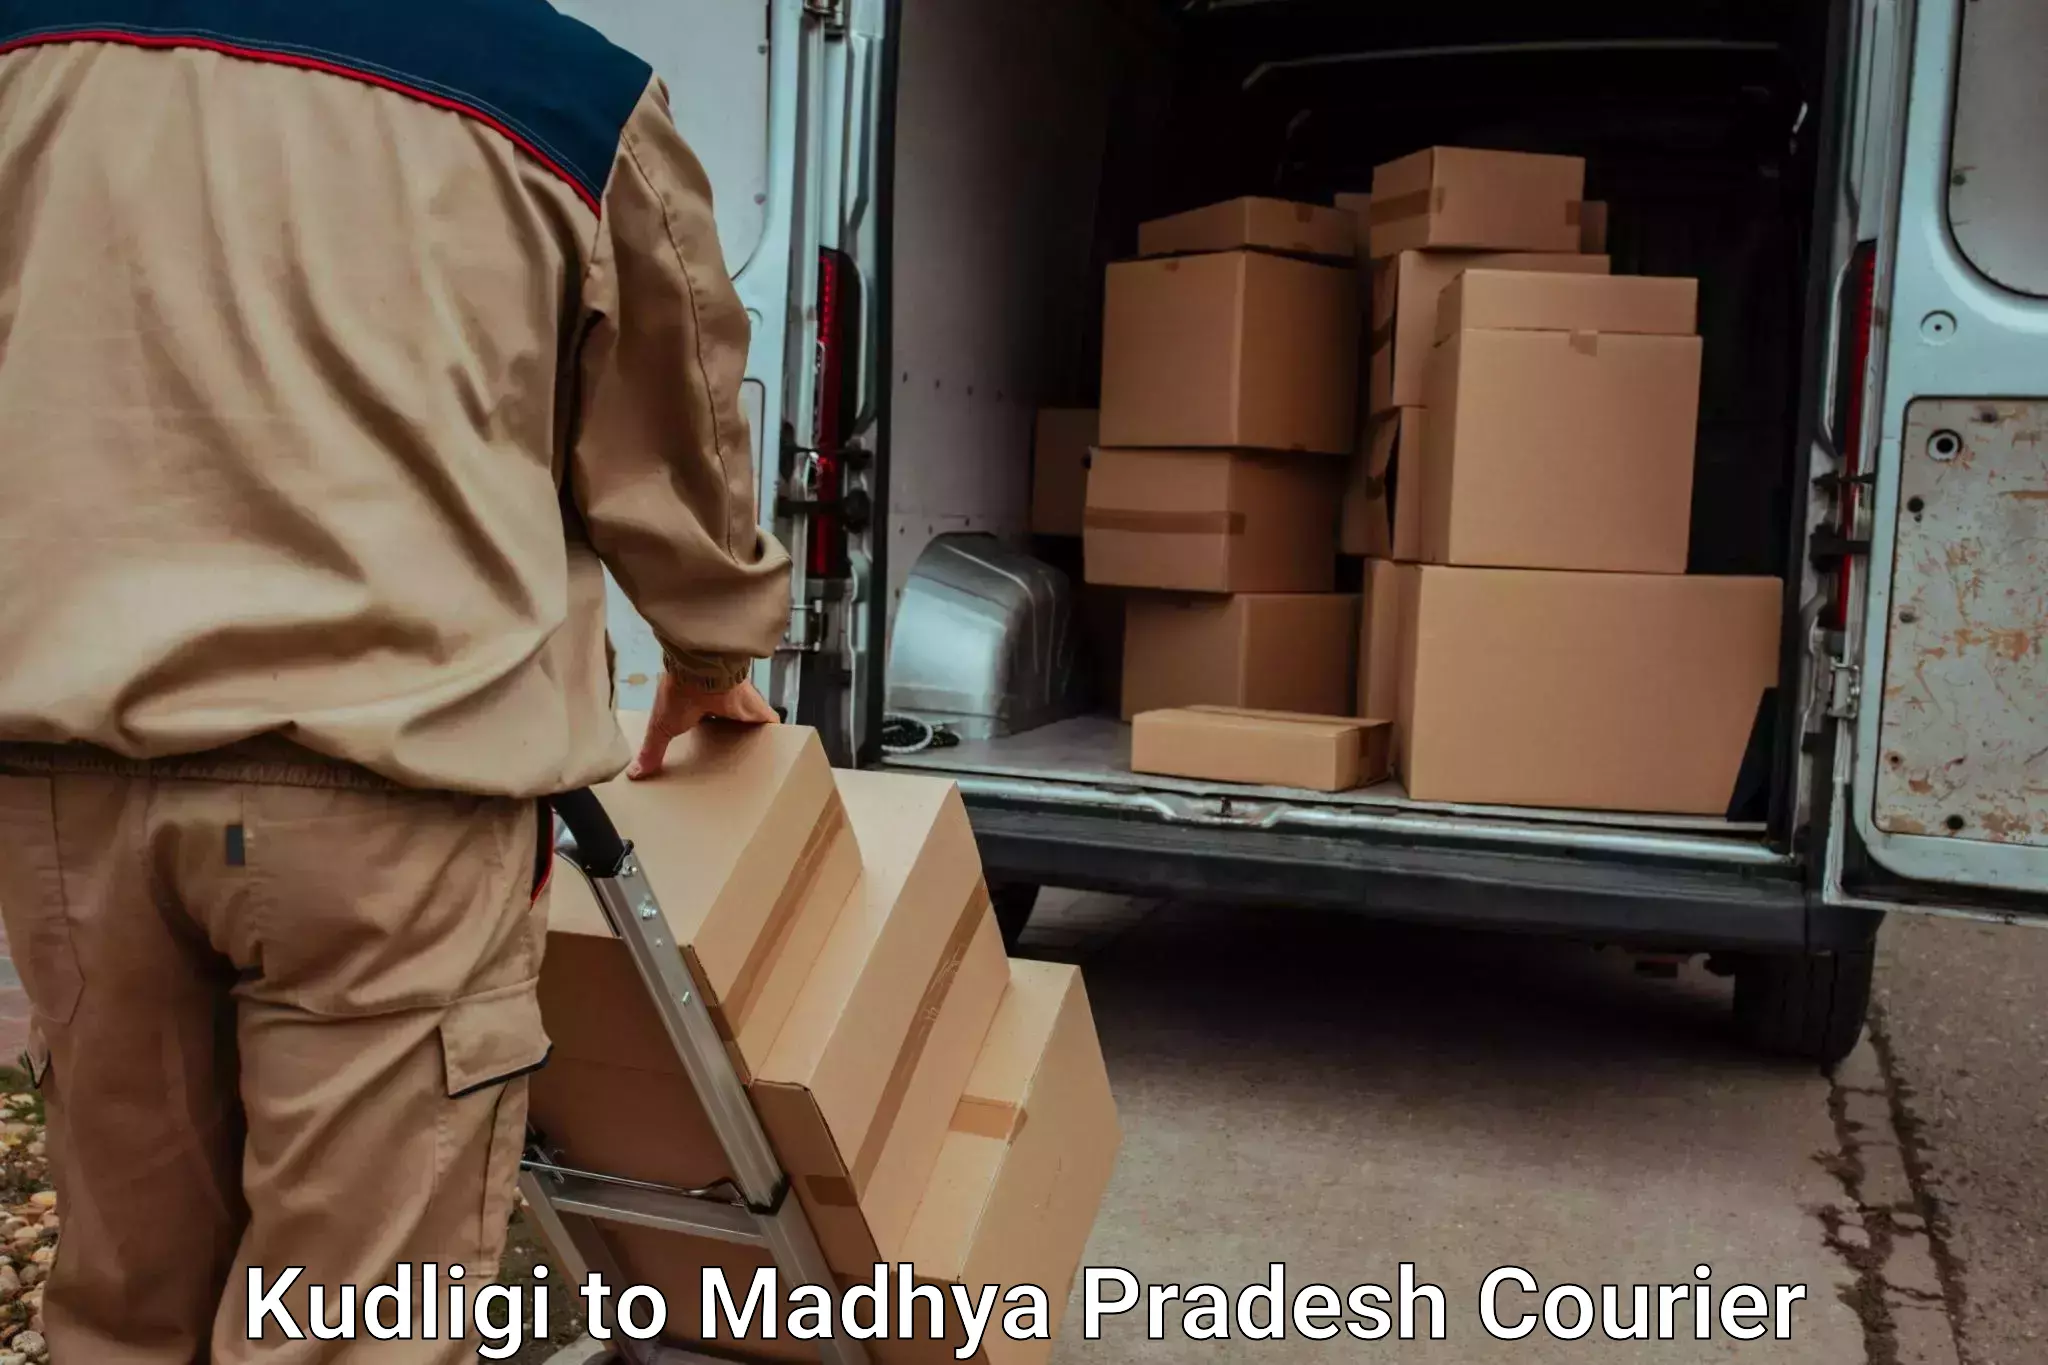 Hassle-free luggage shipping Kudligi to Madhya Pradesh